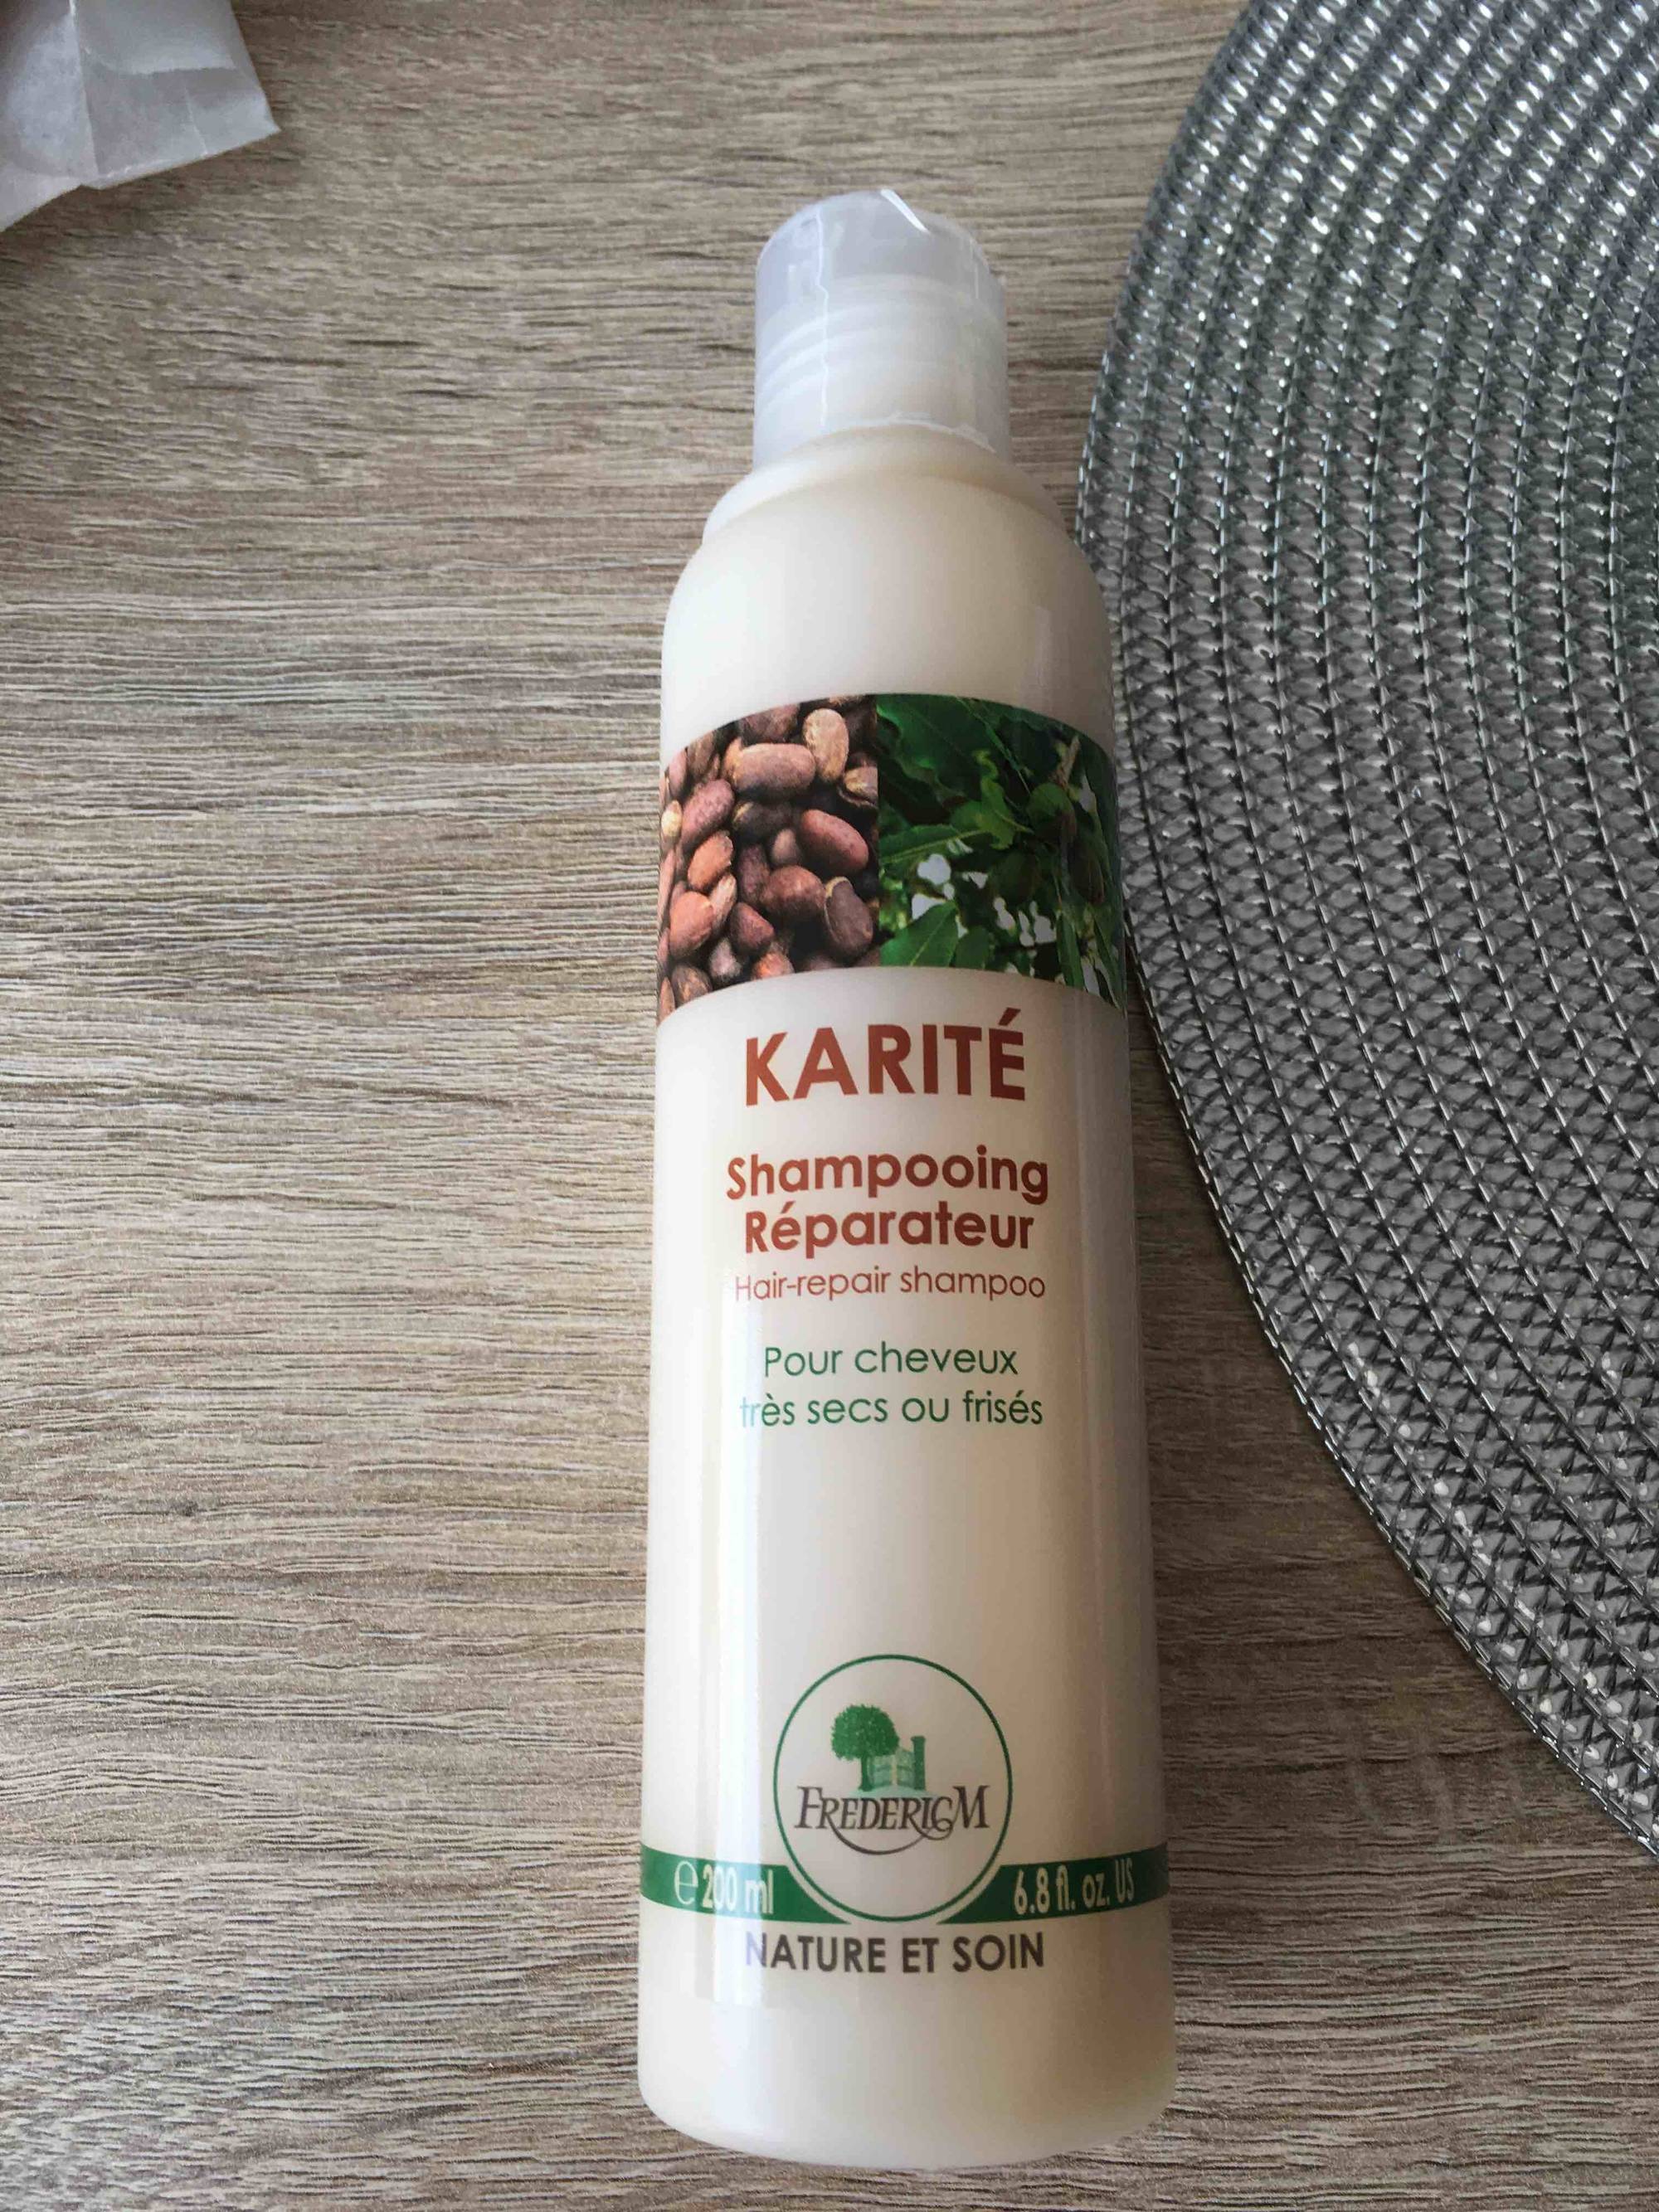 FREDERIC M - Karité - Shampooing réparateur